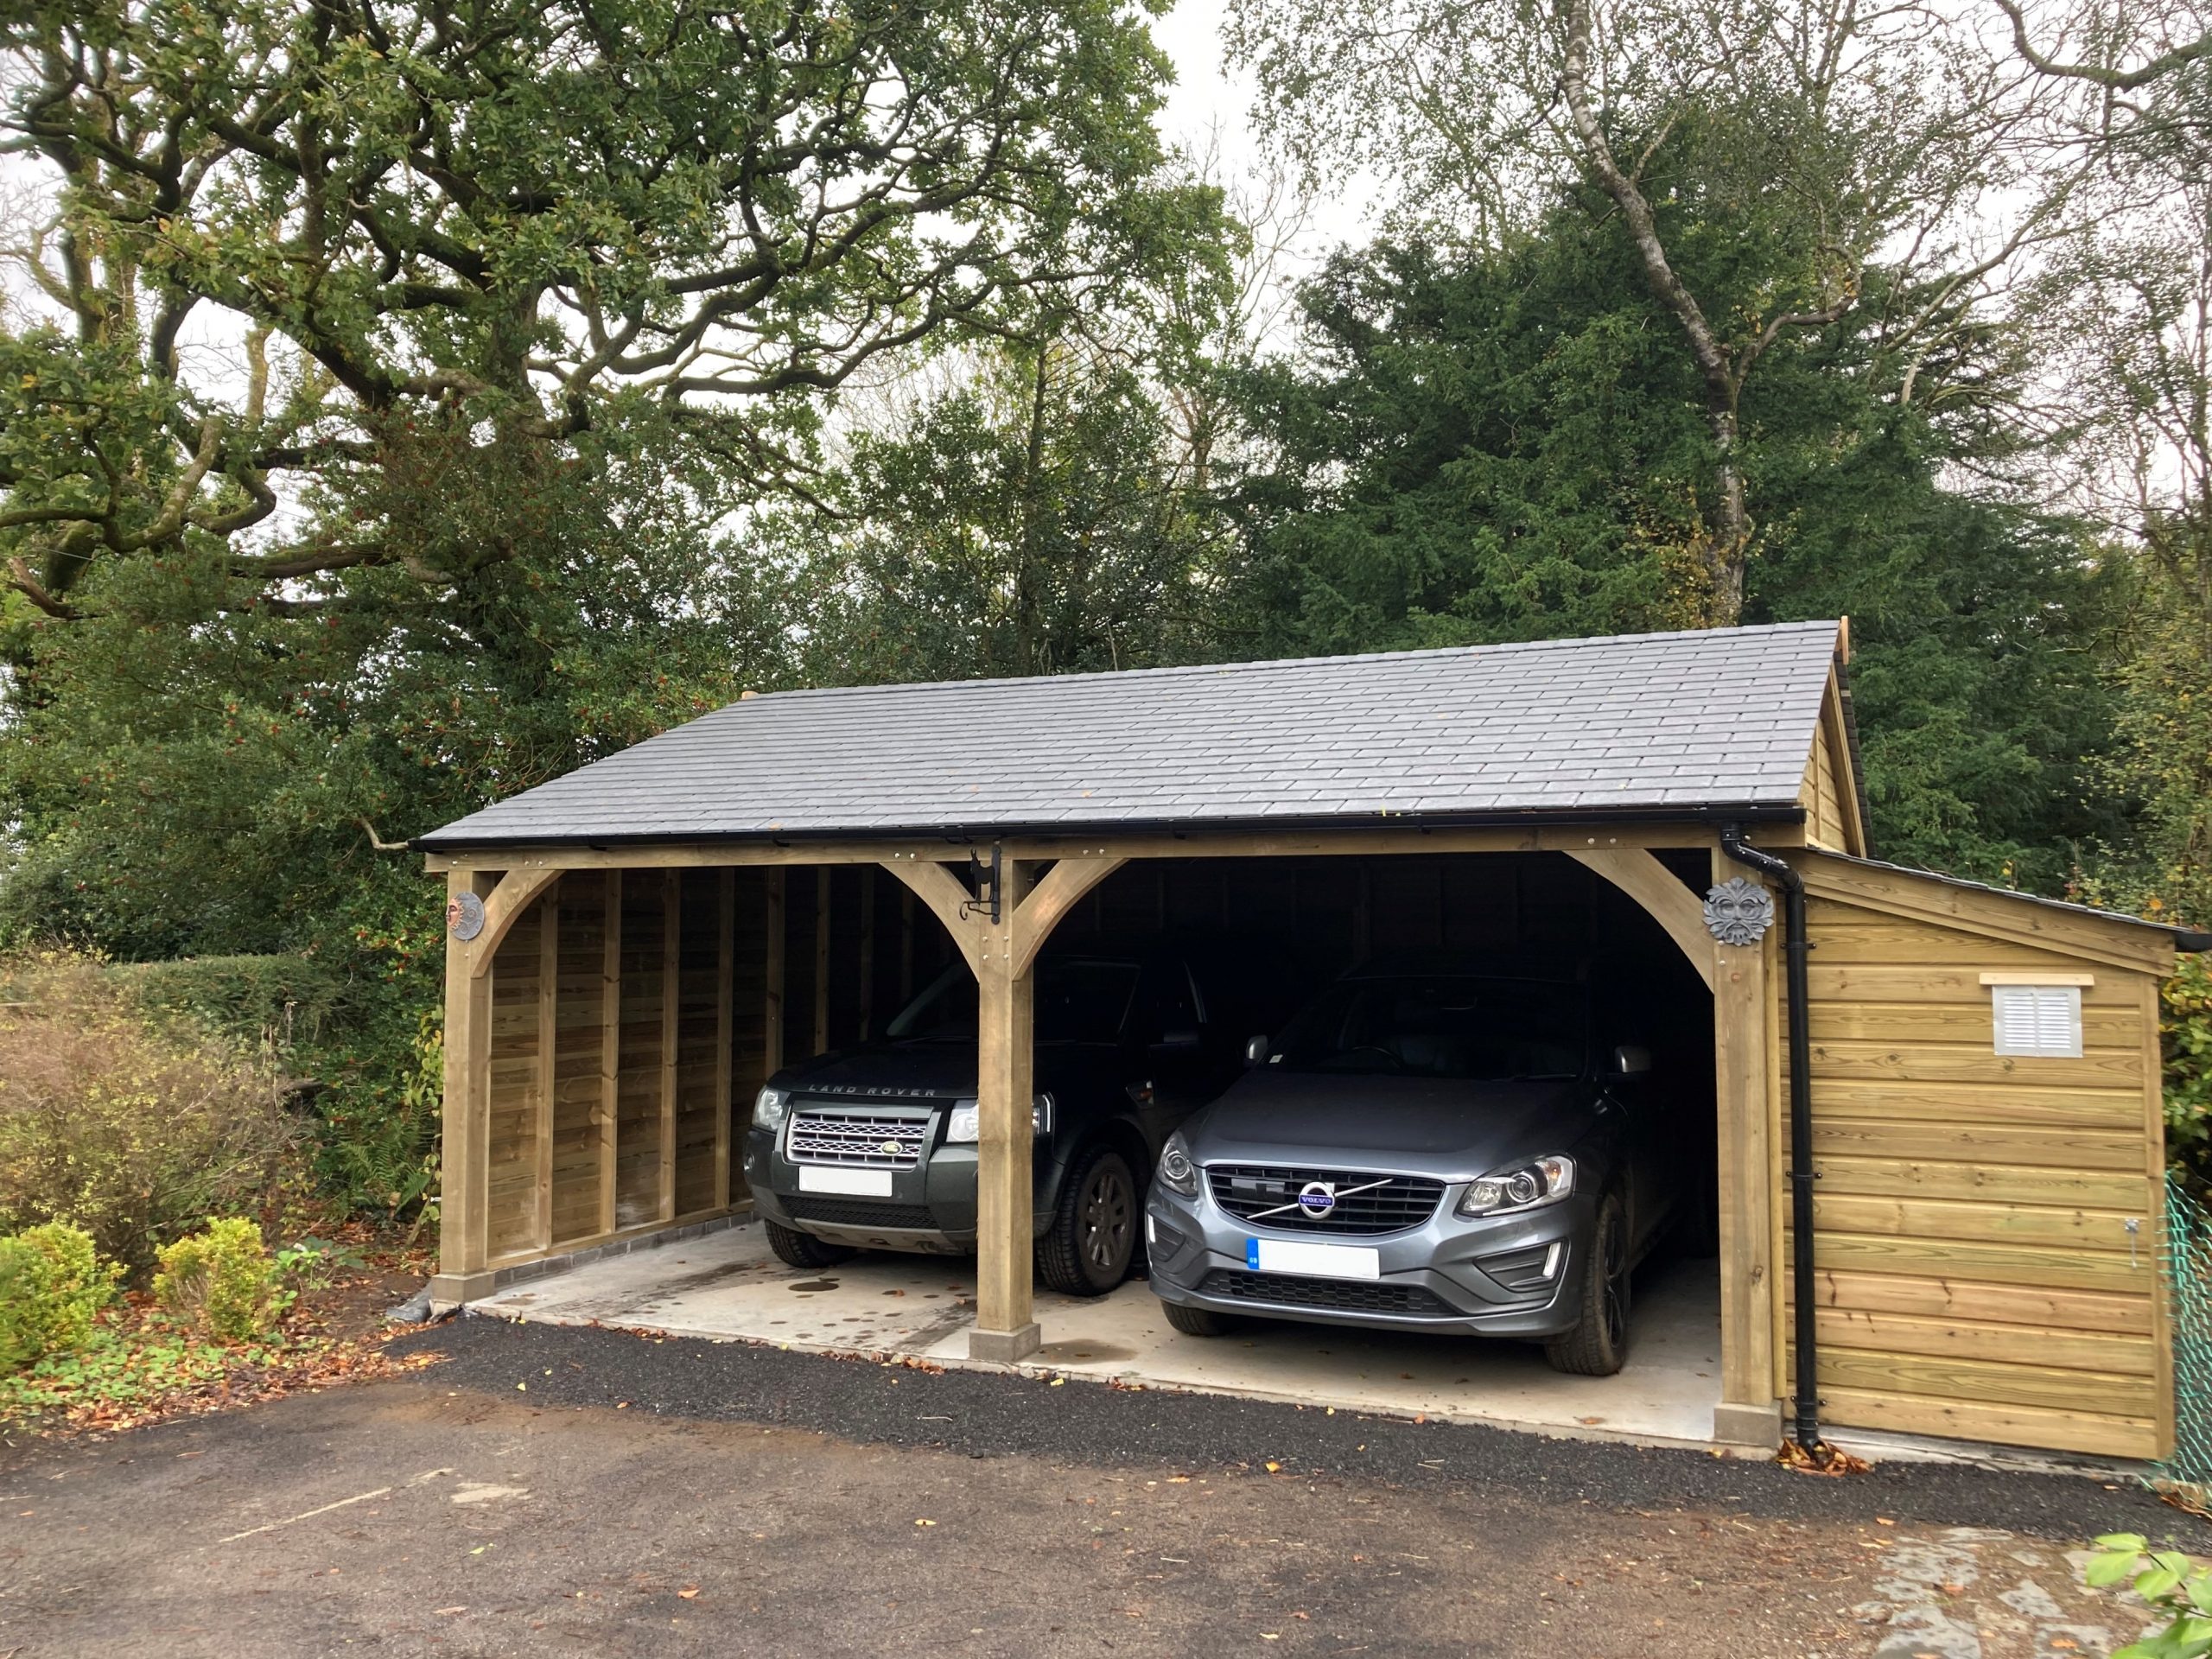 Douglas fir carport - car parking shelter